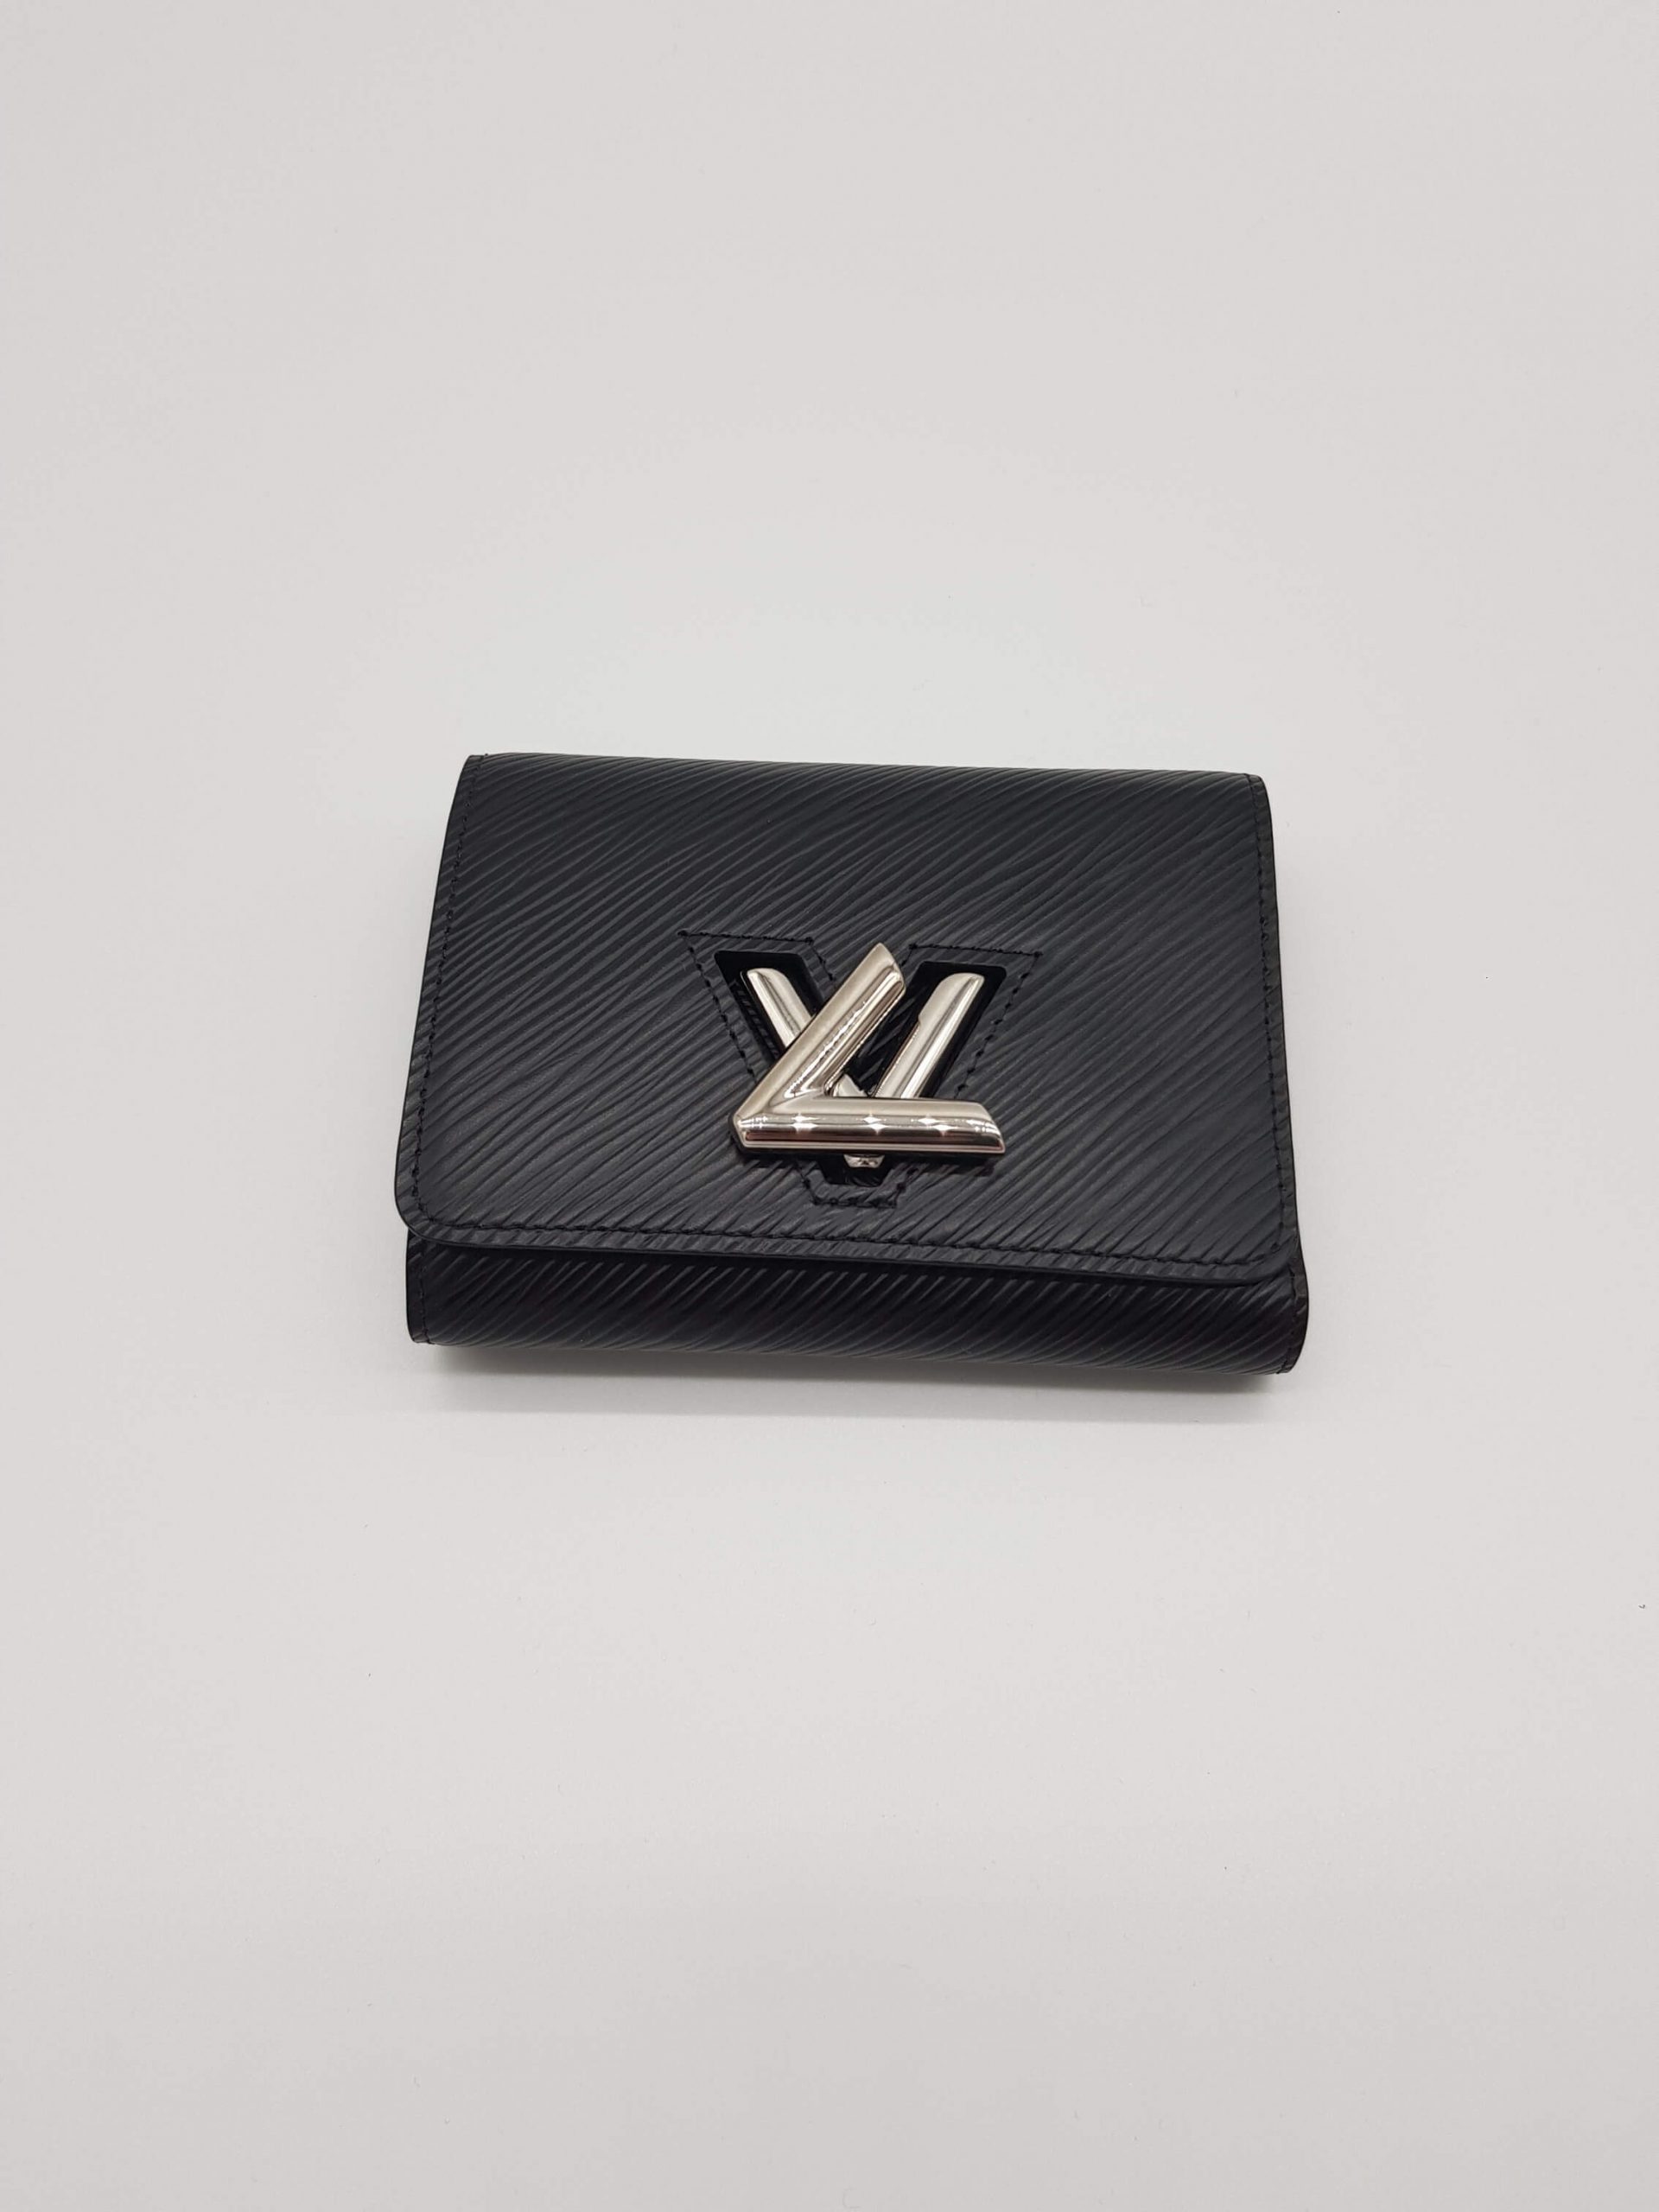 Louis Vuitton Twist Compact Portemonnaie